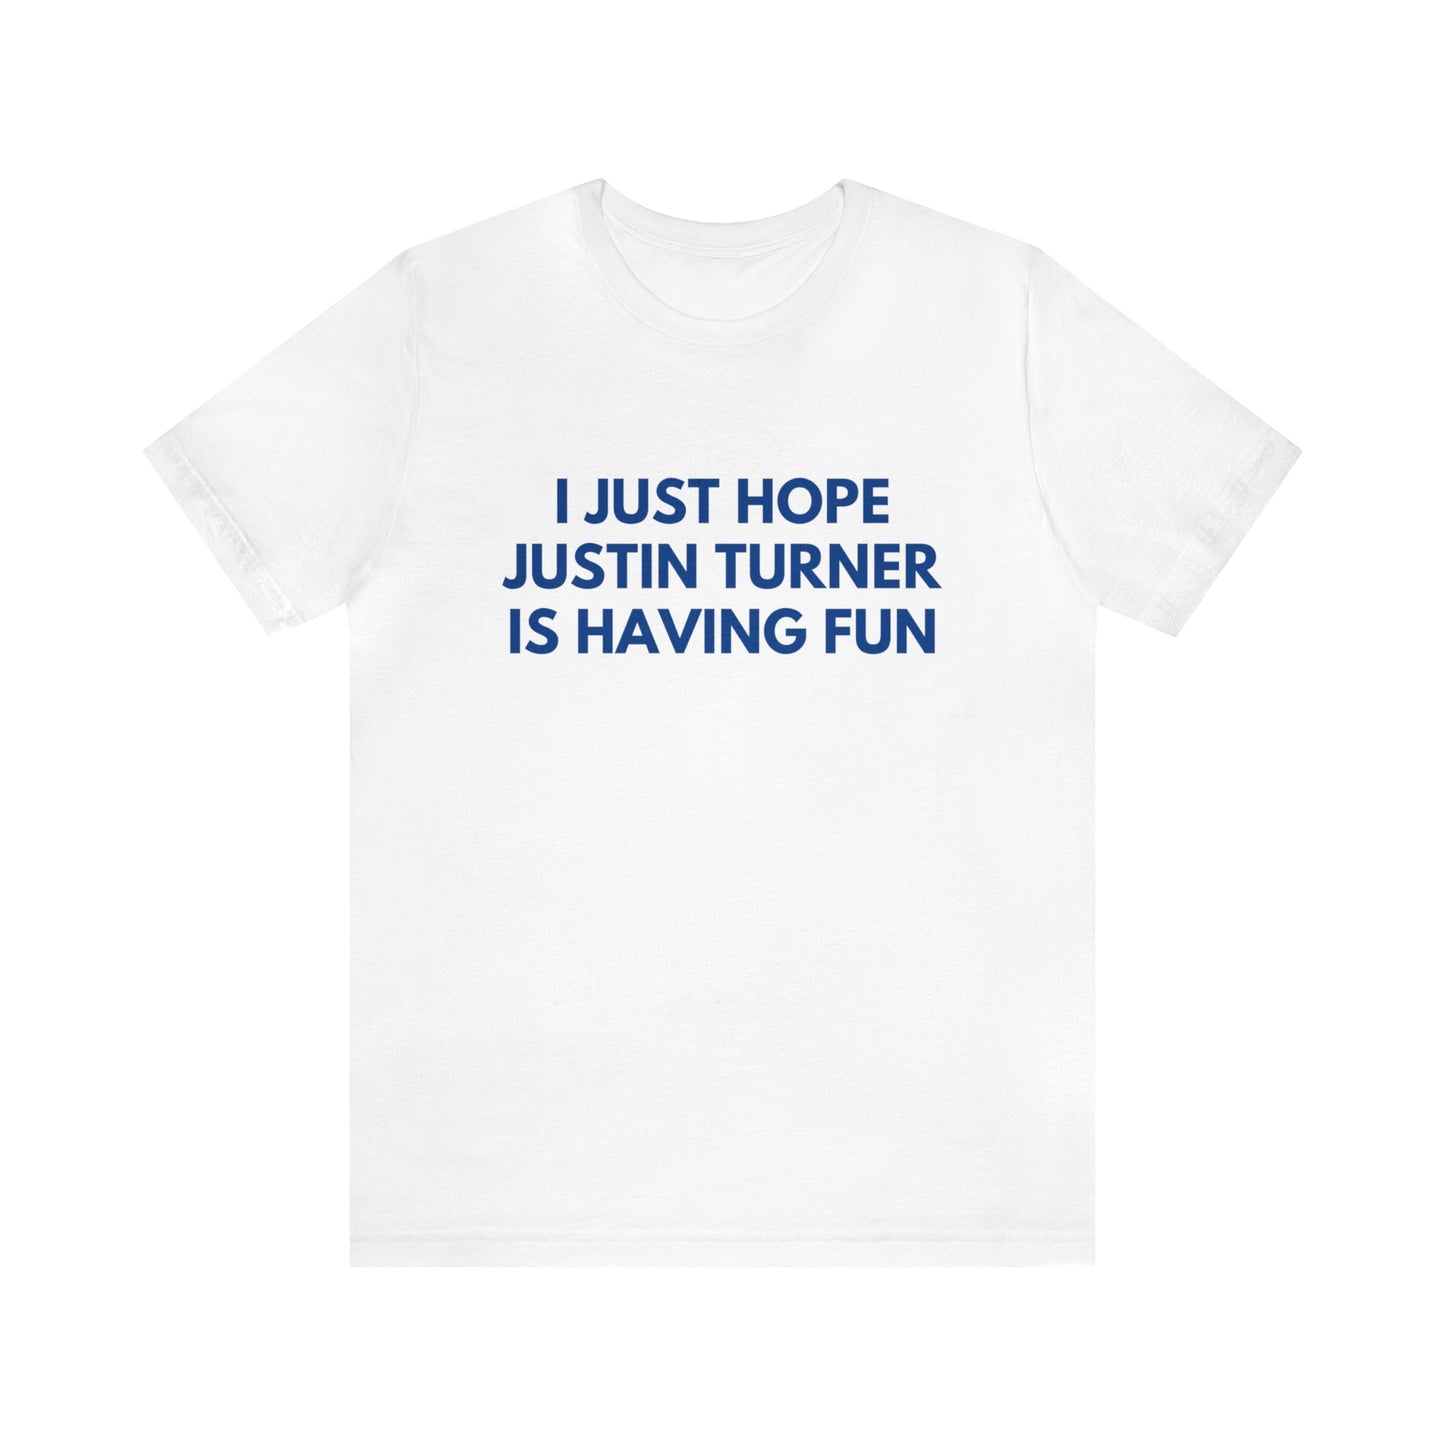 Justin Turner Having Fun - Unisex T-shirt